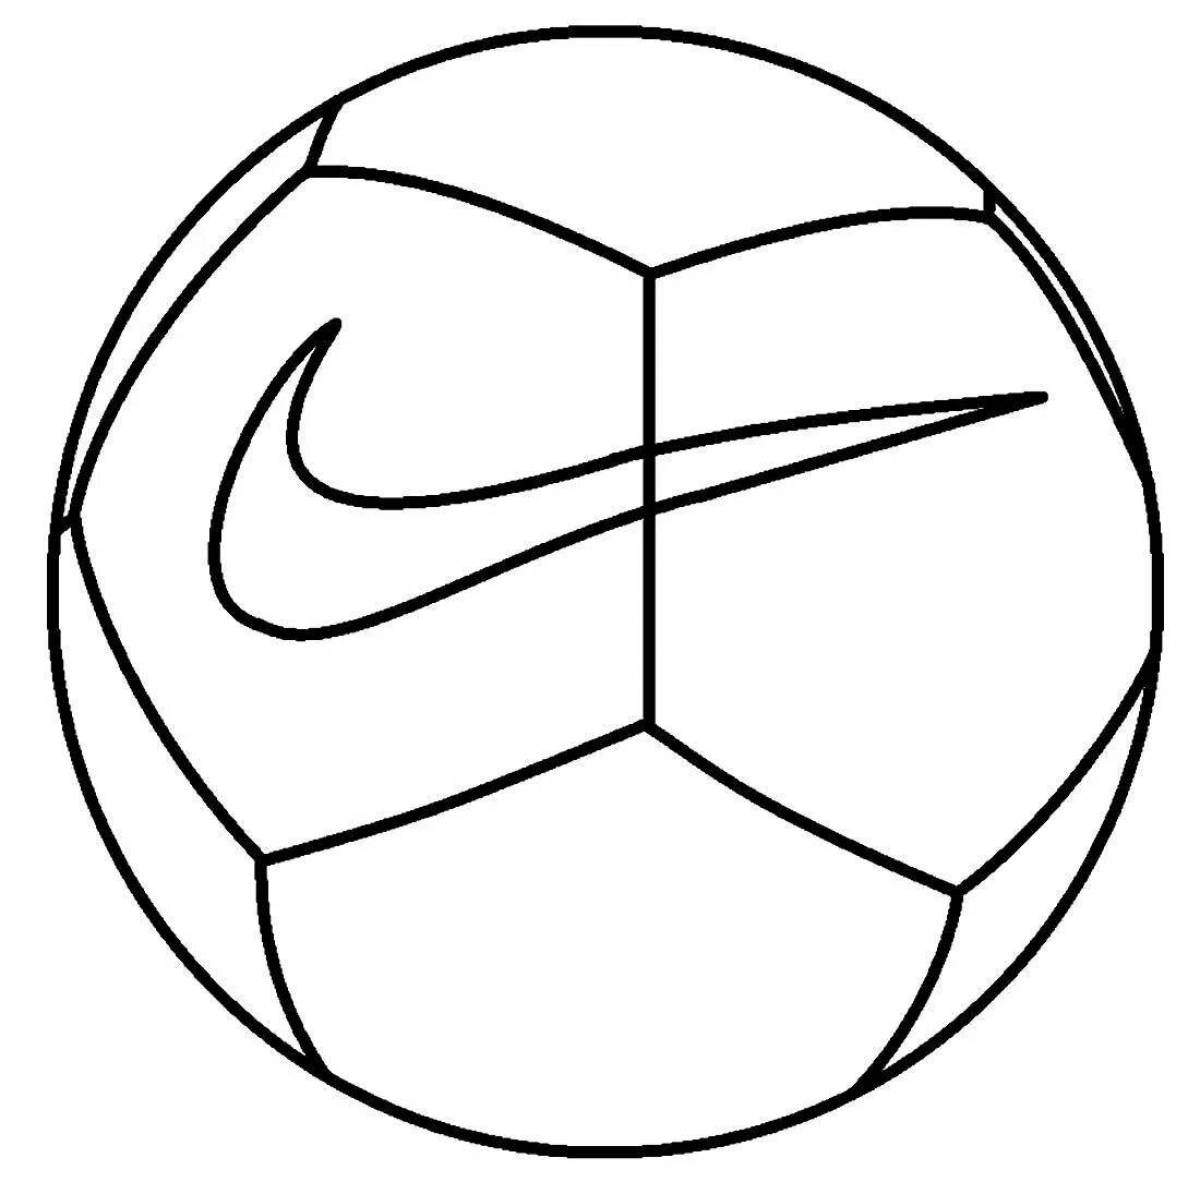 Творческая раскраска футбольного мяча для детей